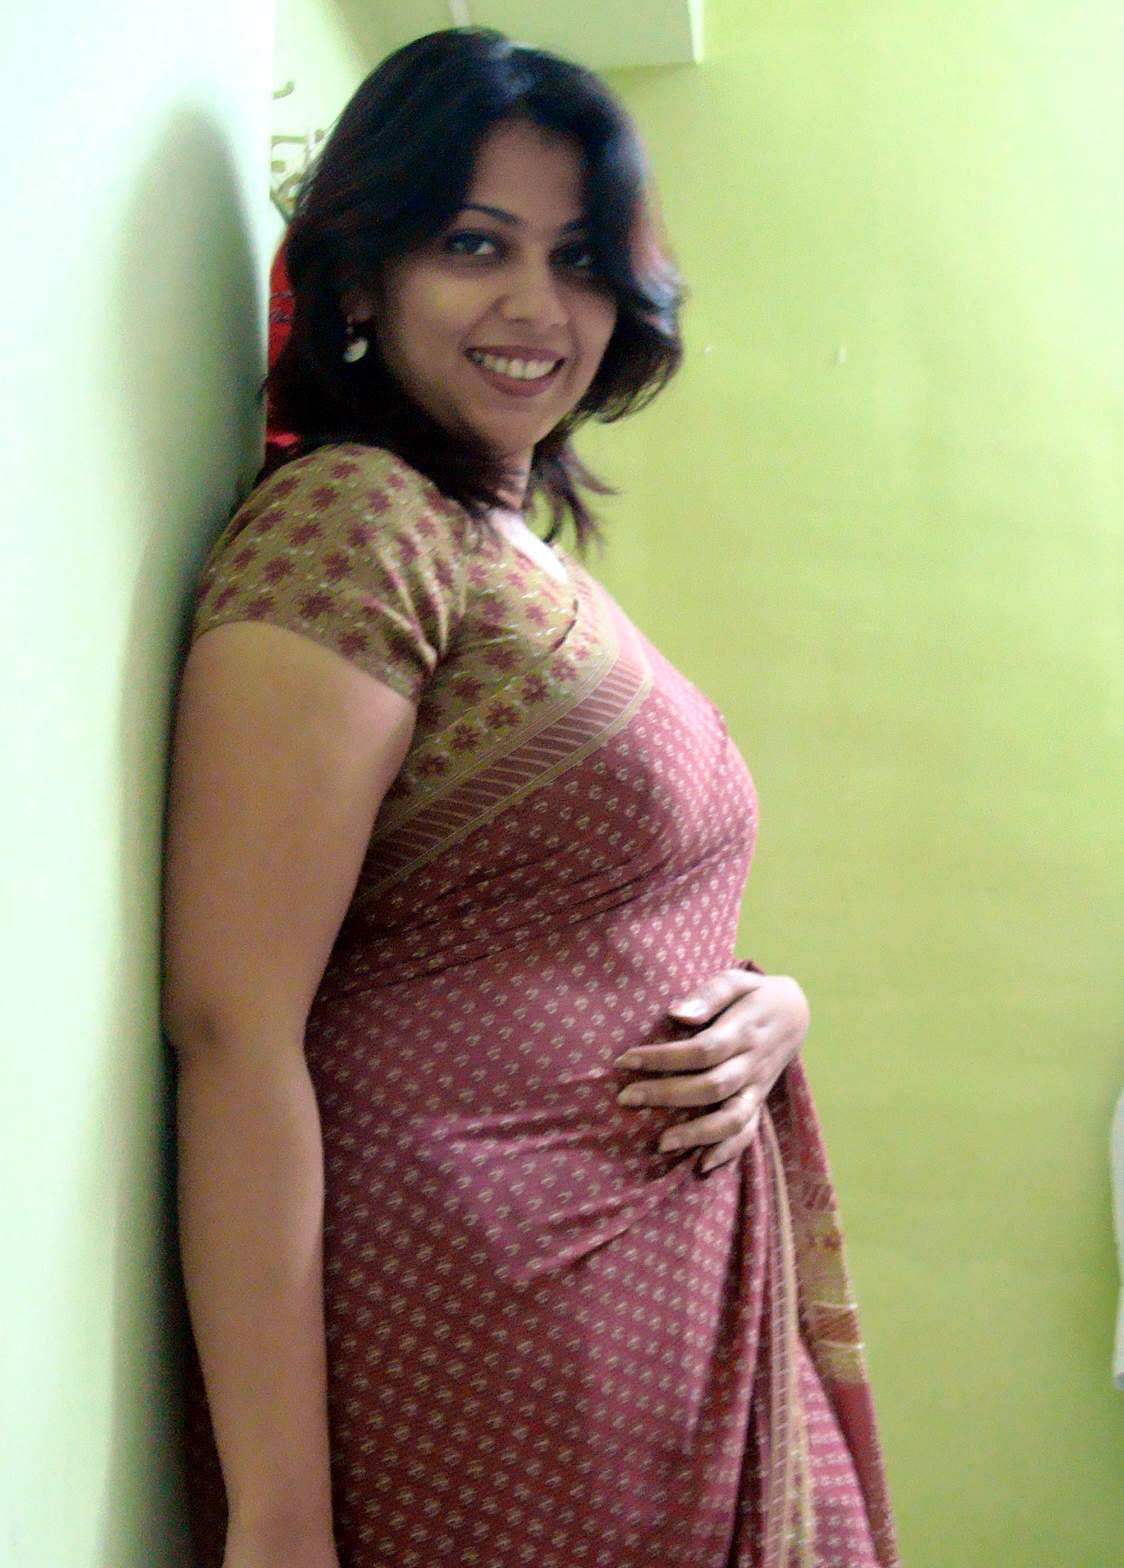 Hot Telugu Bhabhi Big Boobs Bedroom Sexy Girls Photos - Big ...